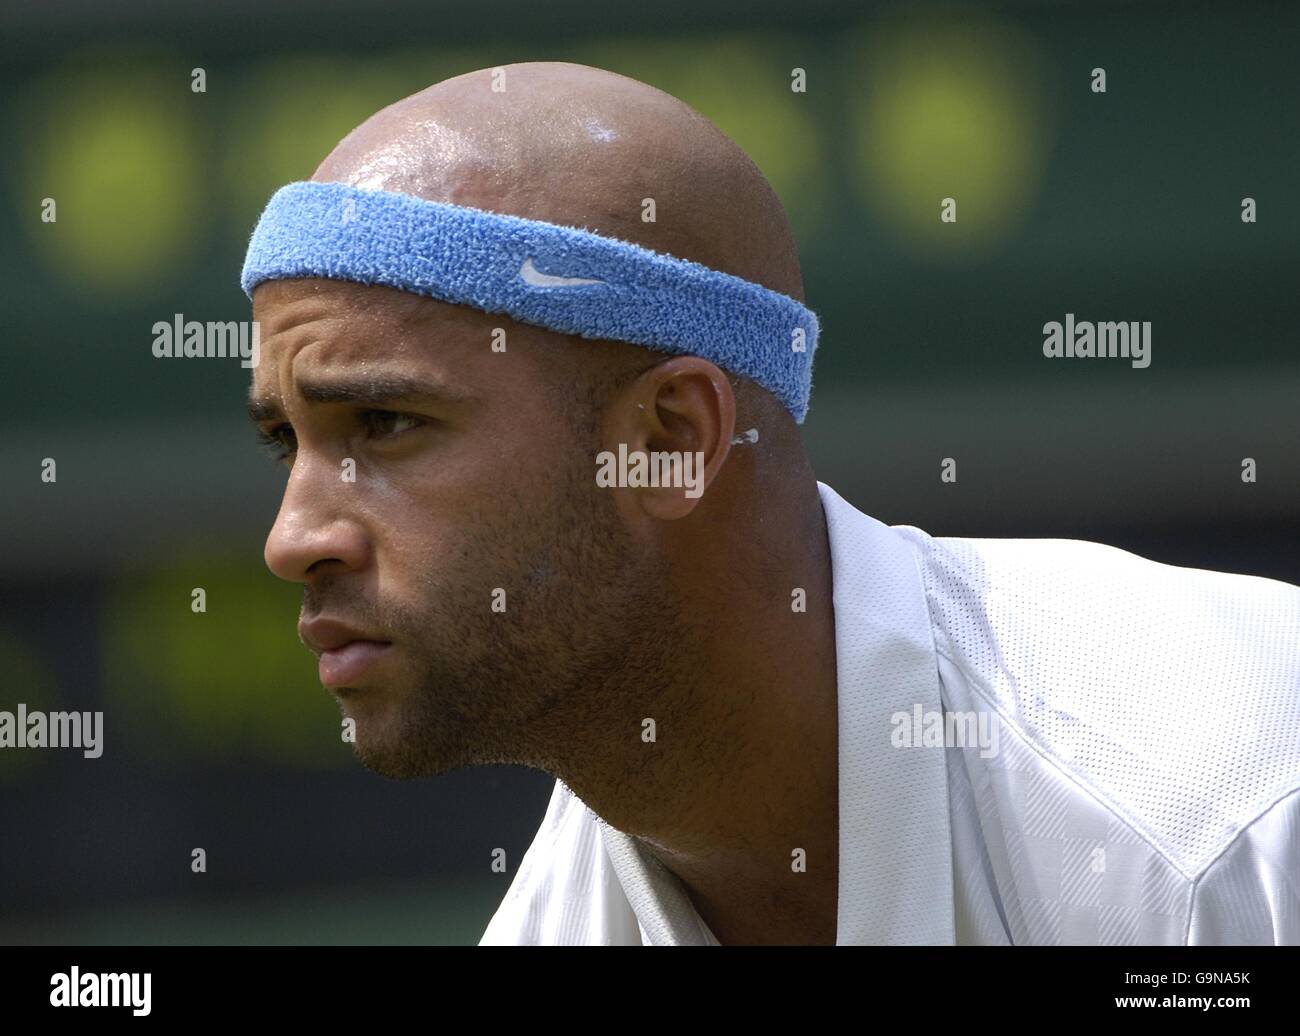 Tennis - Wimbledon Championships 2006 - All England Club. James Blake aus den Vereinigten Staaten von Amerika Stockfoto